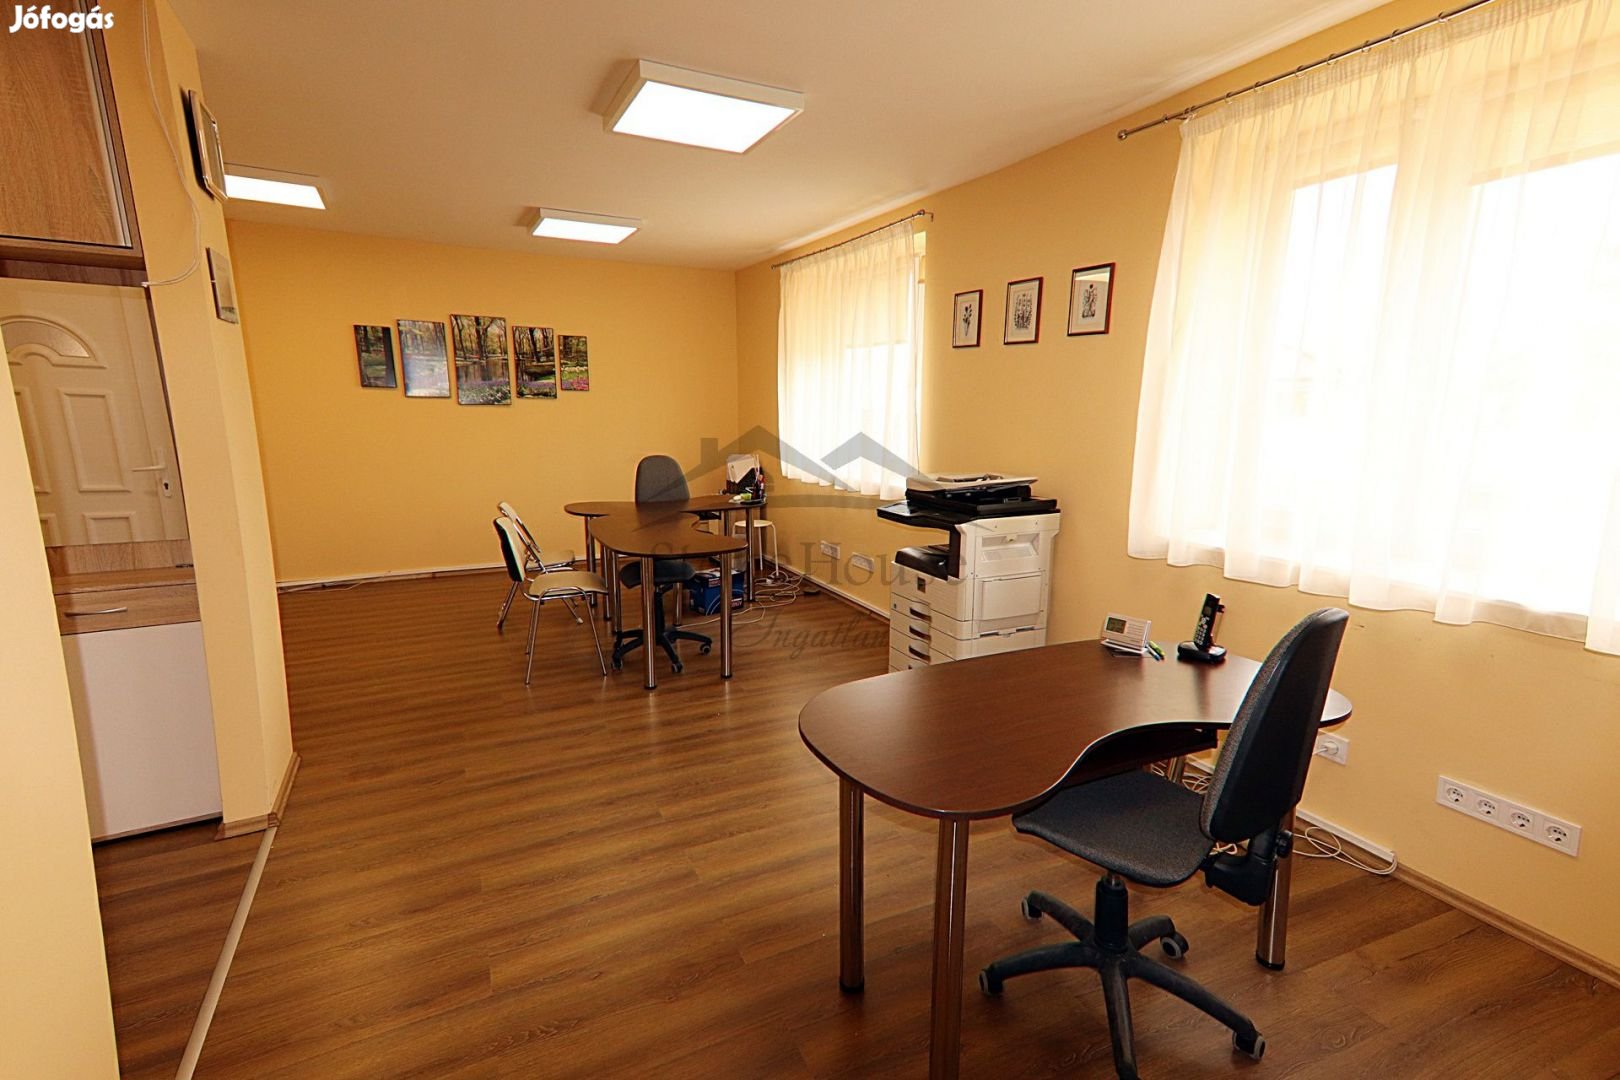 Két lakásos ikerház földszinti lakása Győr-Szabadhegyen kedvező áron